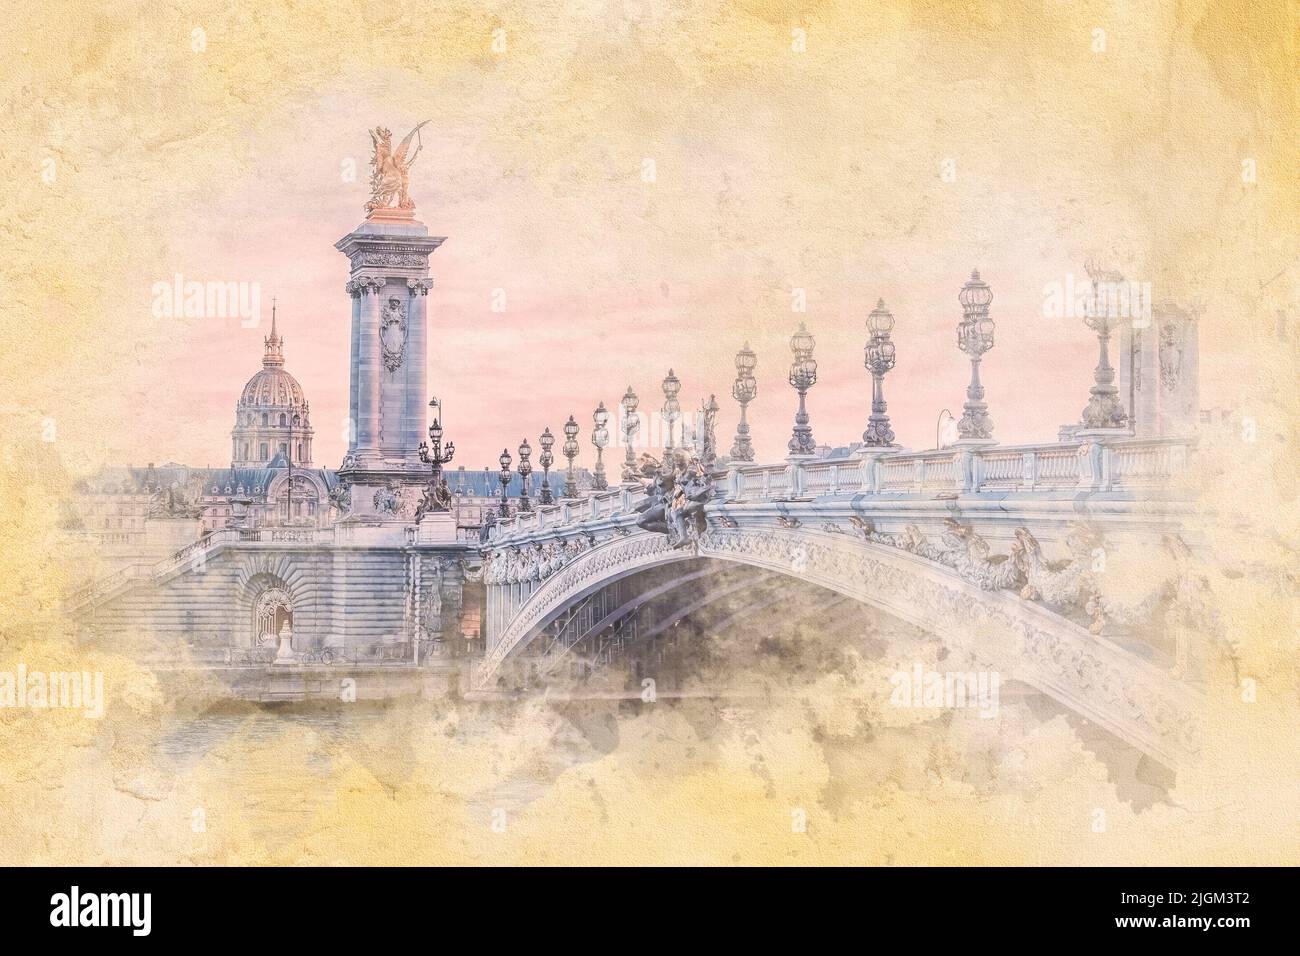 Puente Alexandre III en París - ilustración de efecto acuarela Foto de stock